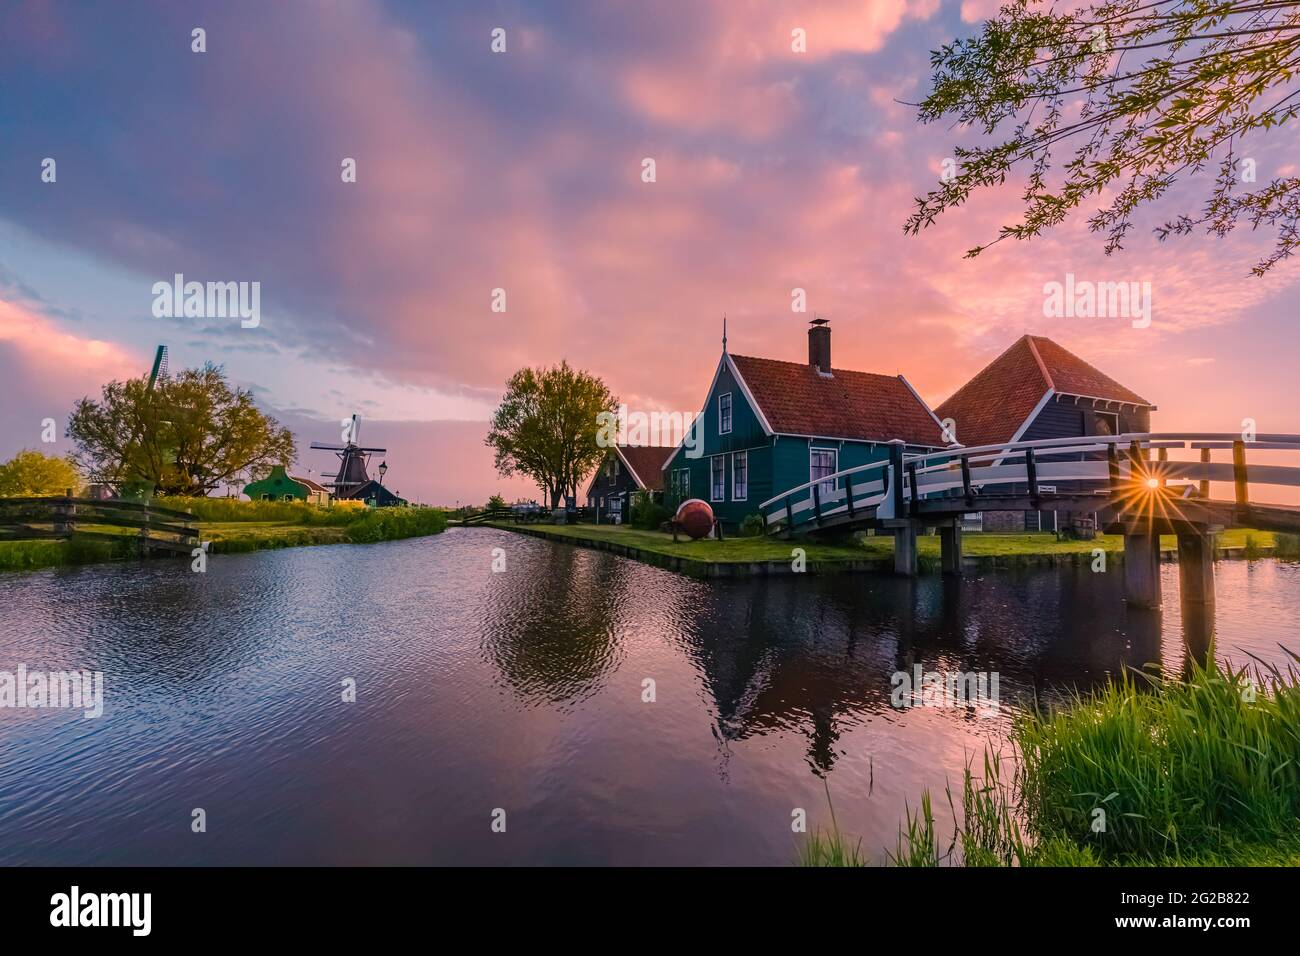 Sonnenaufgang am Zaanse Schans, einem bekannten touristischen Hotspot in Zaandijk, in der niederländischen Provinz Noord-Holland, nicht weit von Amsterdam. Stockfoto